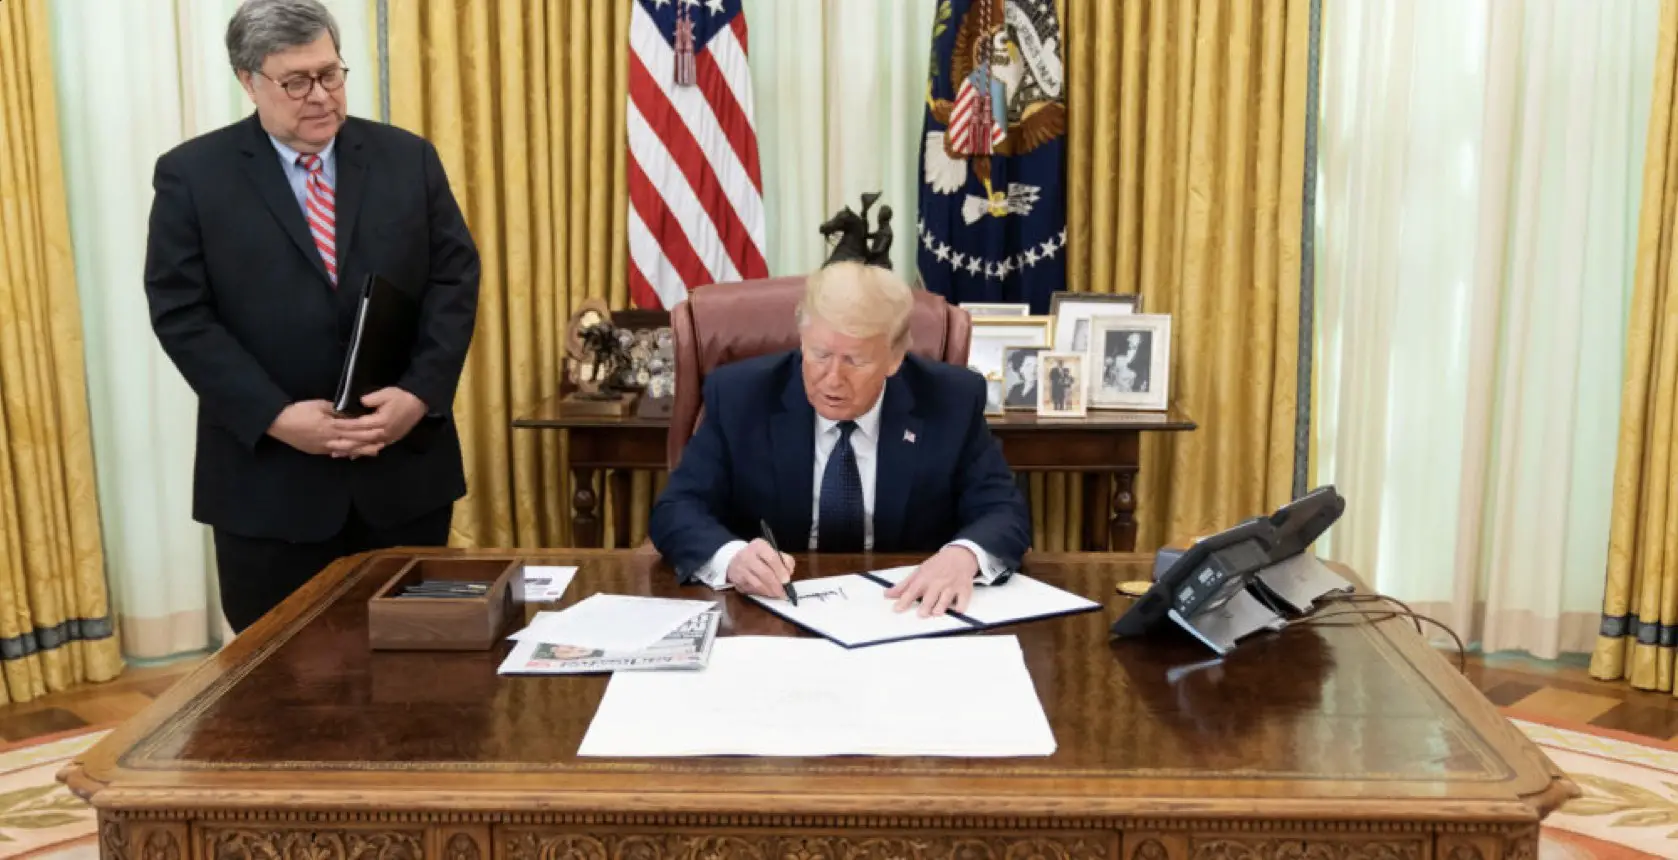 Donald Trump signe un décret révisant le statut des plates-formes de réseaux sociaux.